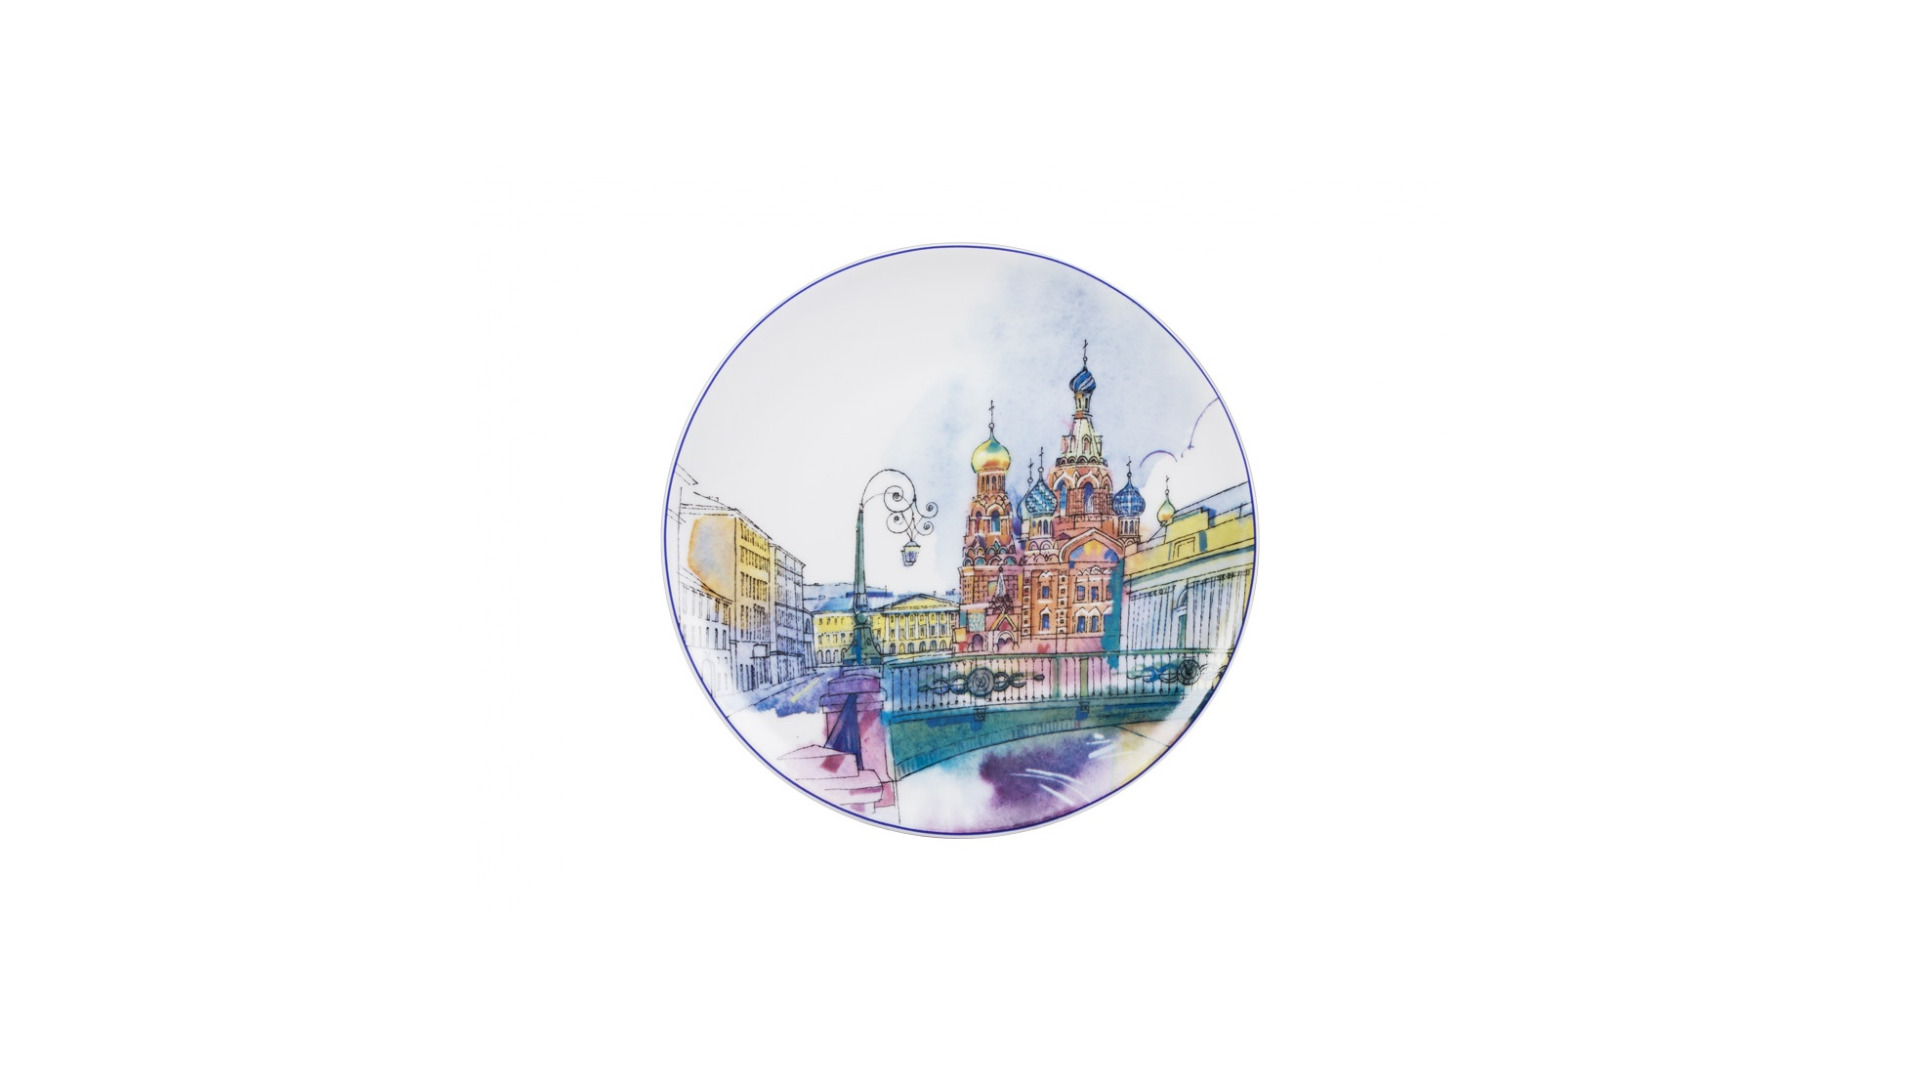 Тарелка декоративная ИФЗ Санкт-Петербург. Итальянский мост Эллипс 19,5 см, фарфор твердый